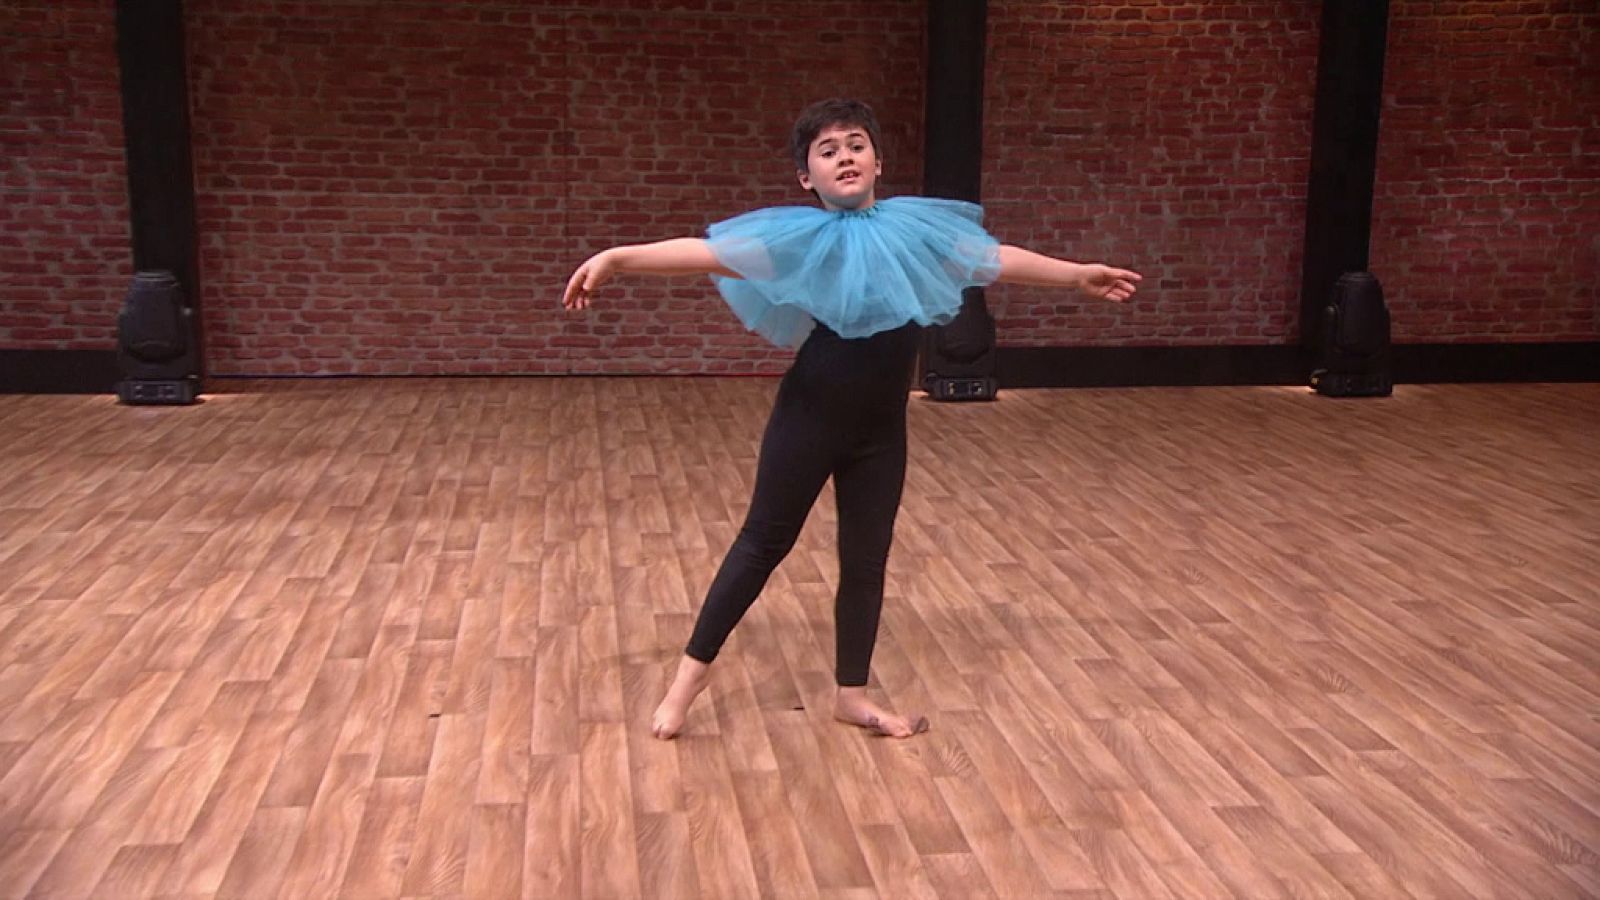 The Dancer - Actuación completa de Álex Rodés